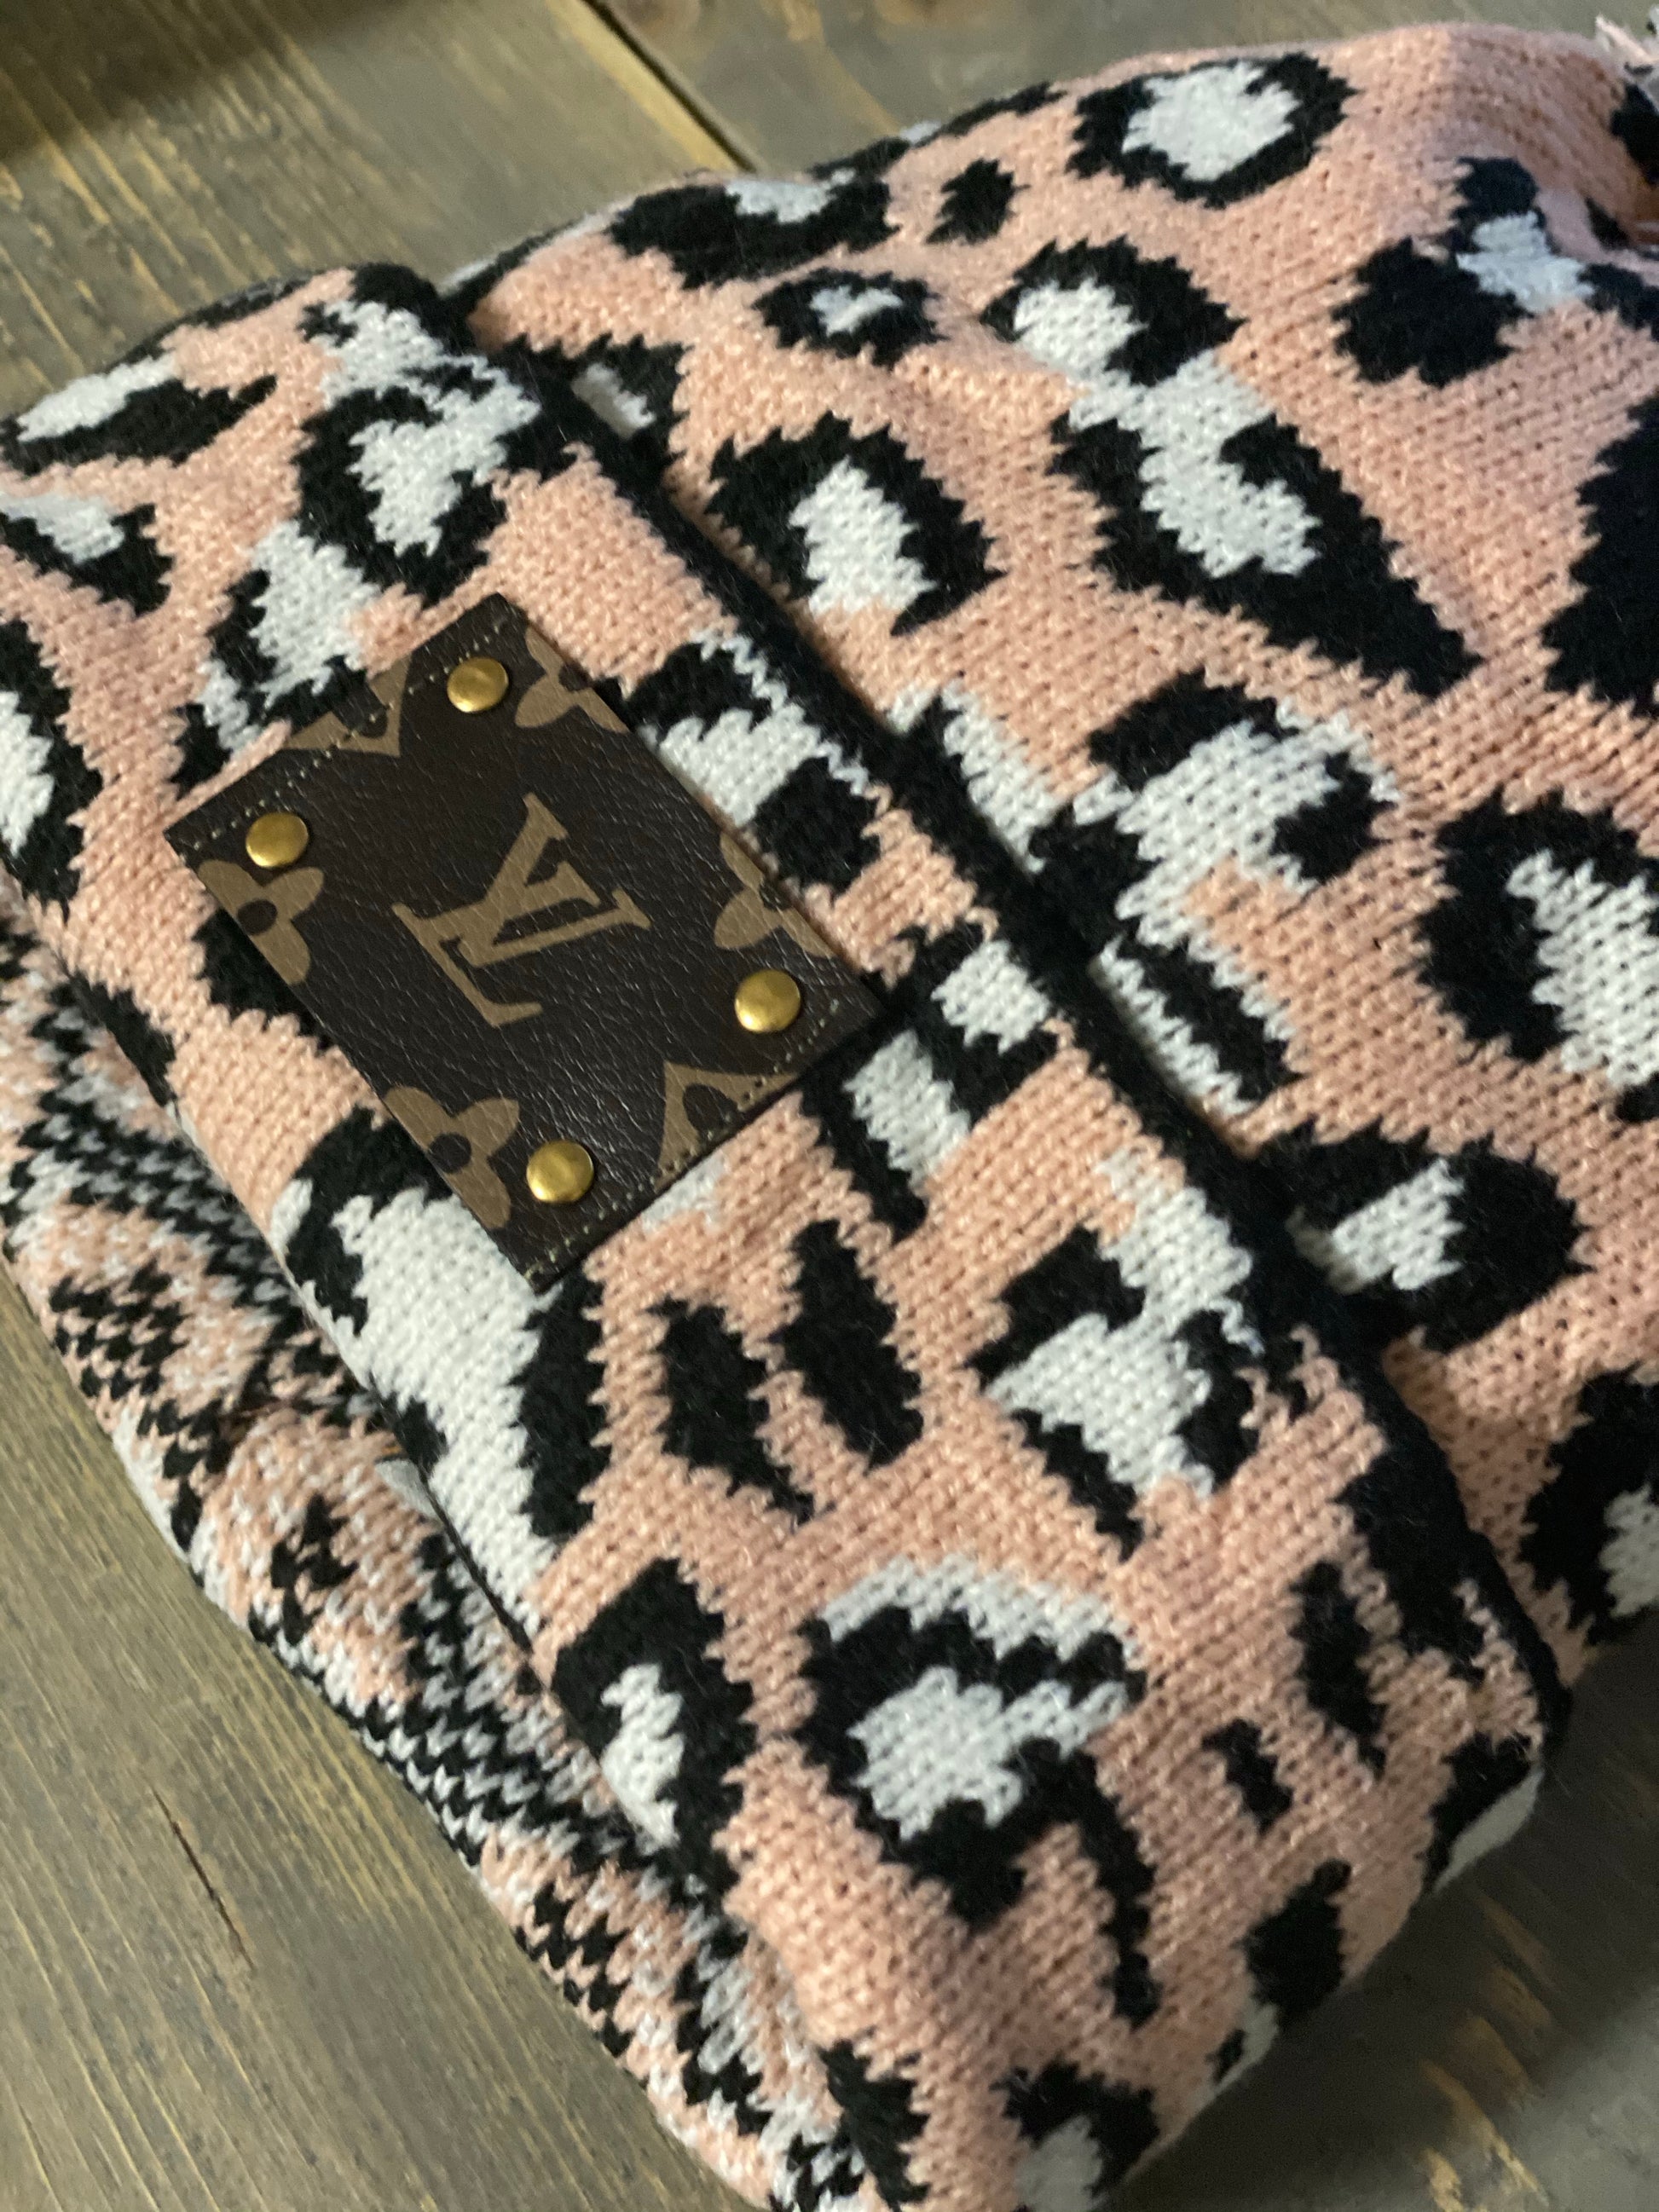 Leopard Print Louis Vuitton Beanie